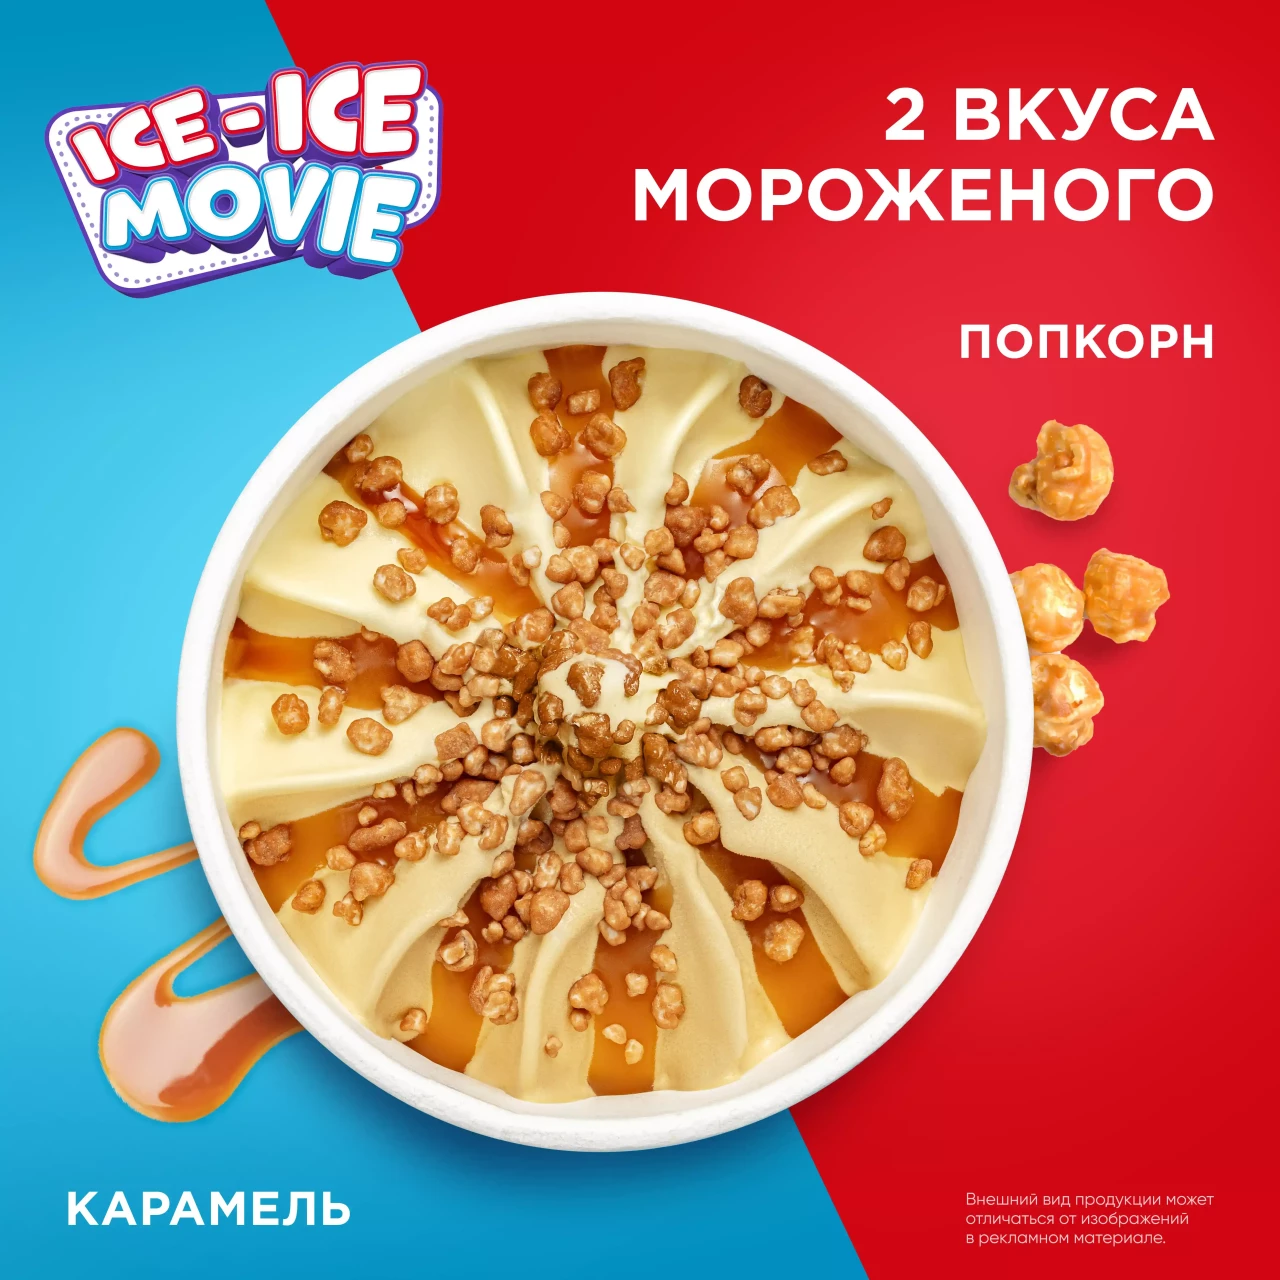 Инмарко ICE-ICE movie мороженое сливочное пинта с попкорном и соусом Мягкая карамель 260 гр